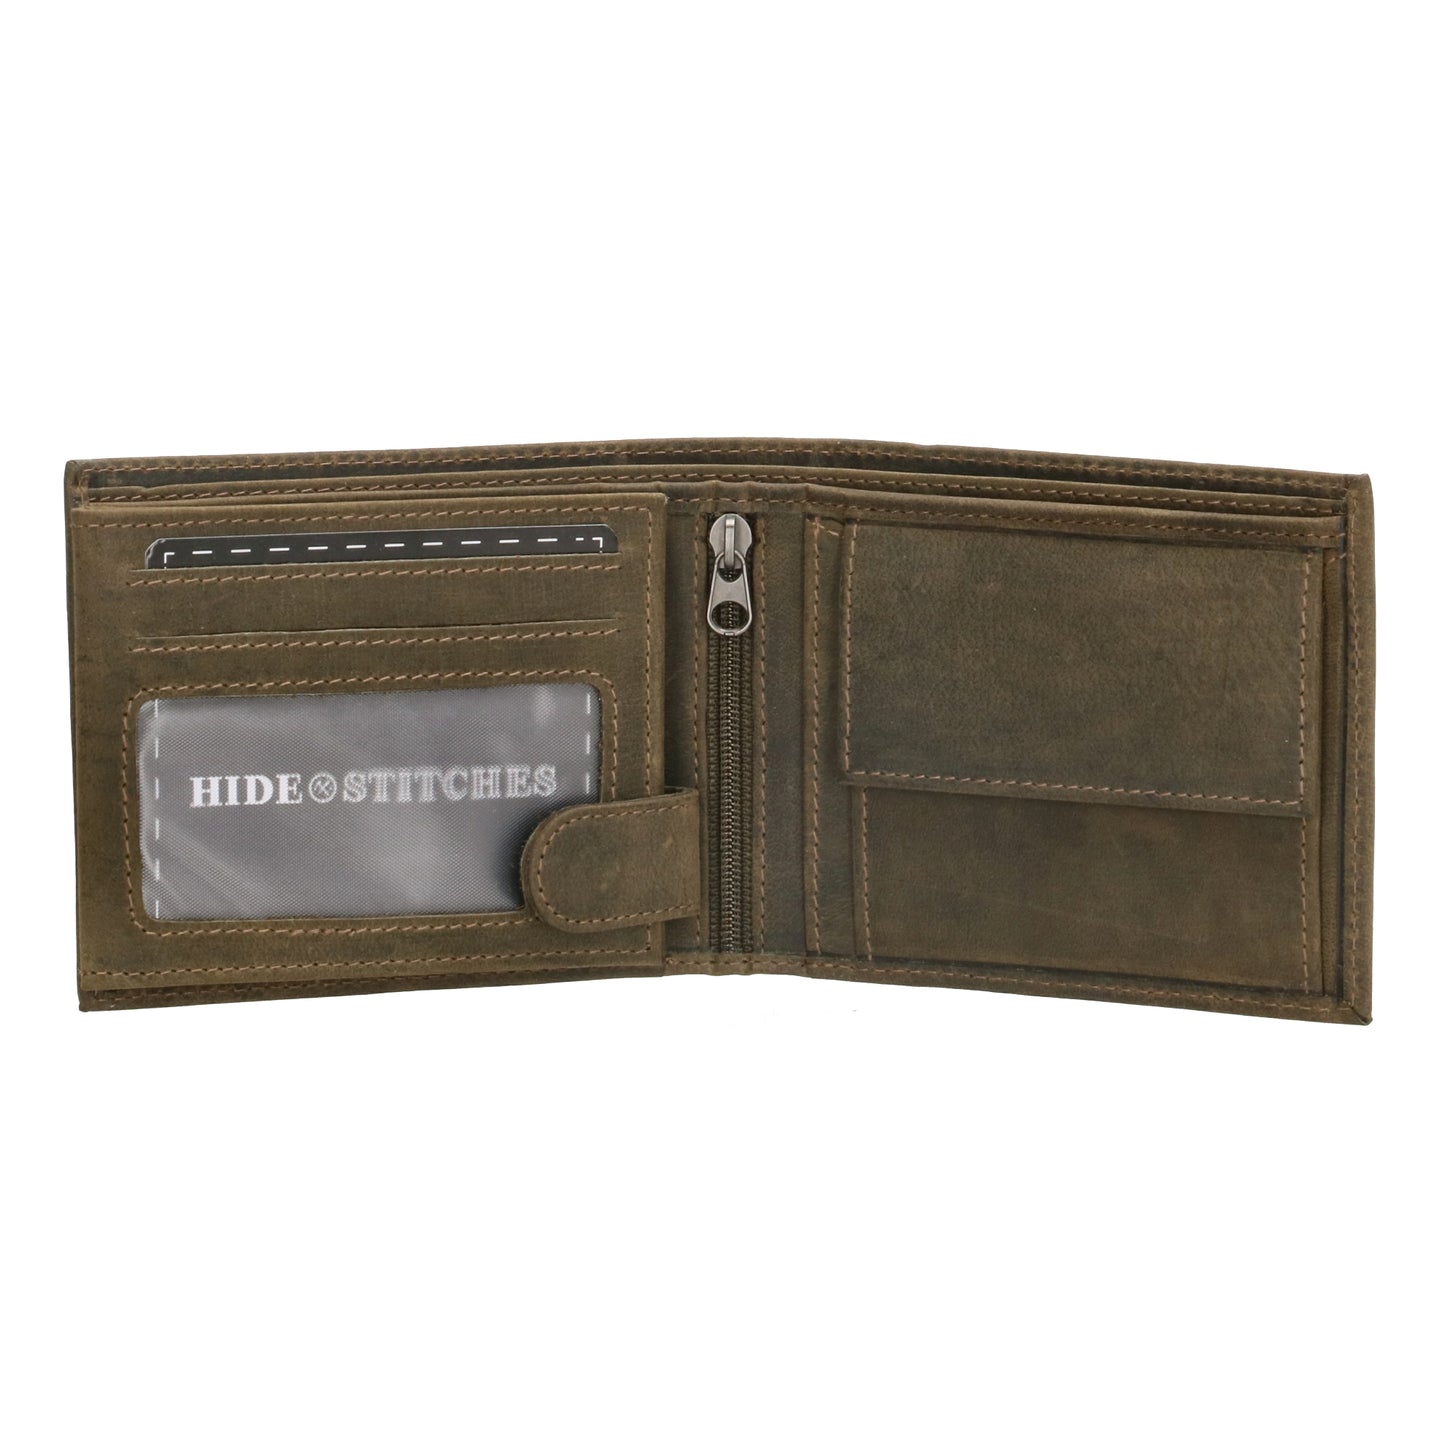 Geldbörse Querformat 12 x 9,5cm mit Riegel in Olivgrün aus Leder